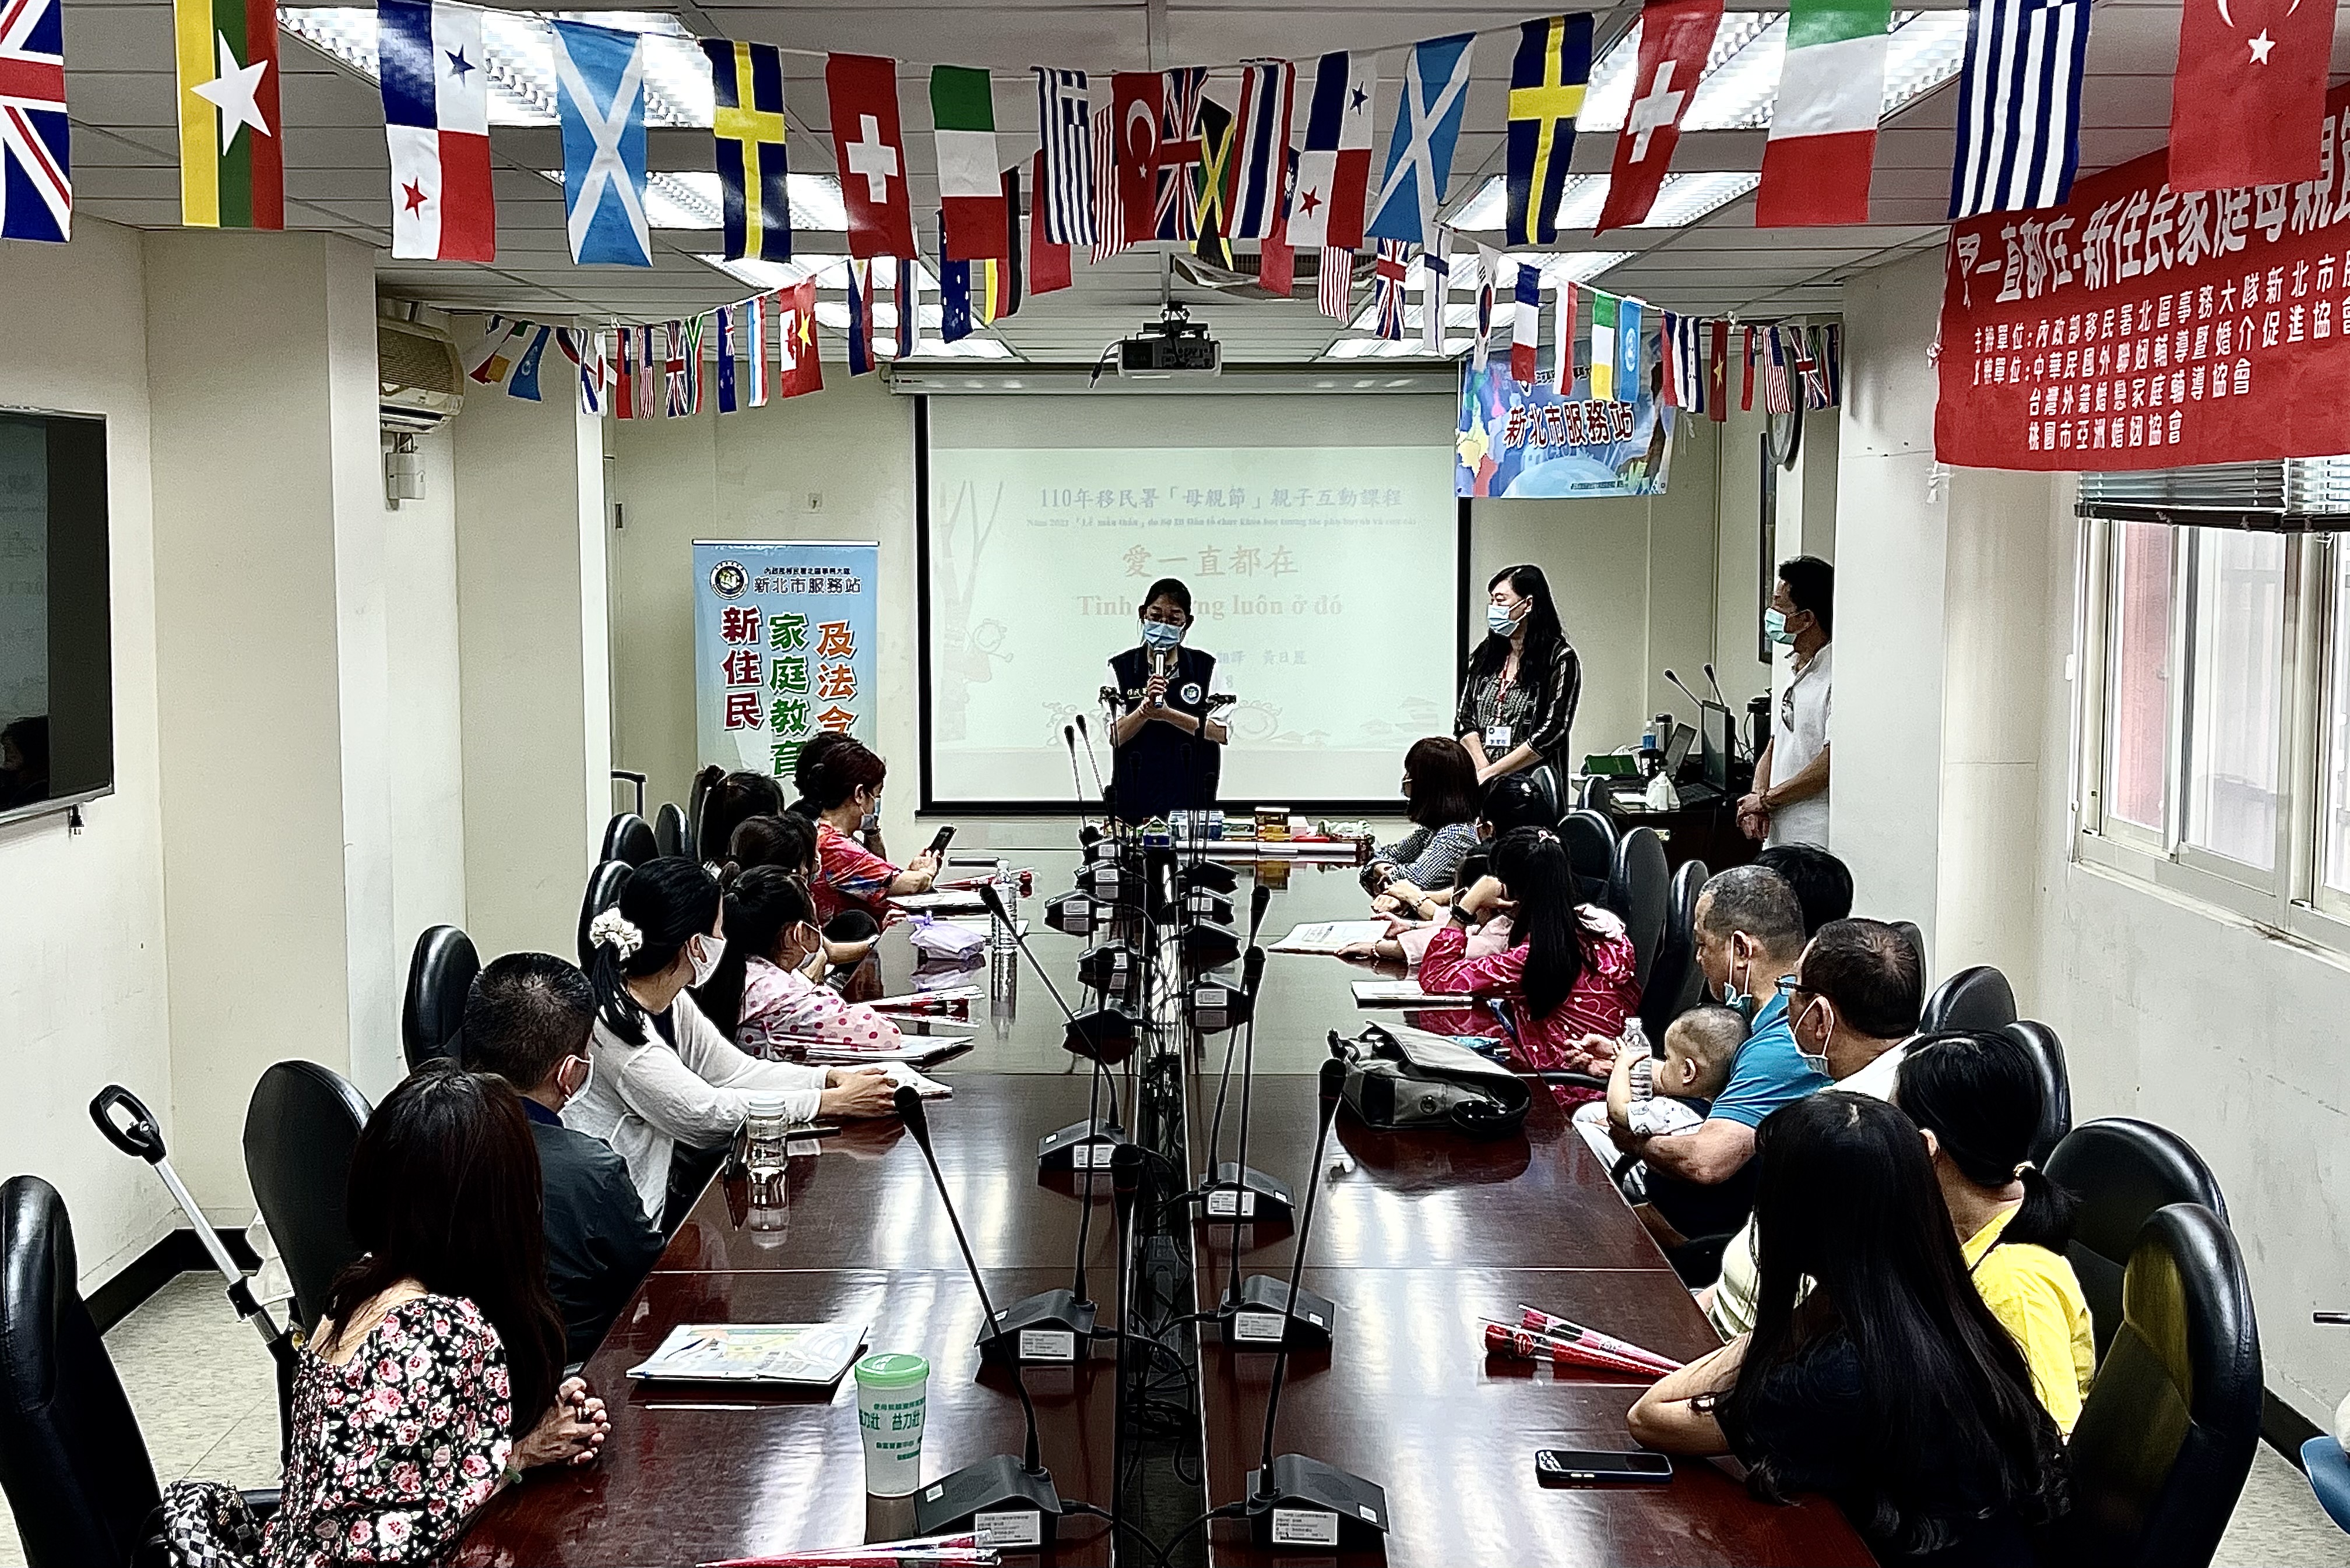 Trạm Phục vụ của Sở Di dân tại Tân Bắc tổ chức lớp học giáo dục gia đình với sự tham gia của 20 gia đình của di dân mới đến từ Trung Quốc, Indonesia, Việt Nam, Lào, và Philippines. (Ảnh: Trạm Phục vụ của Sở Di dân tại Tân Bắc cung cấp 